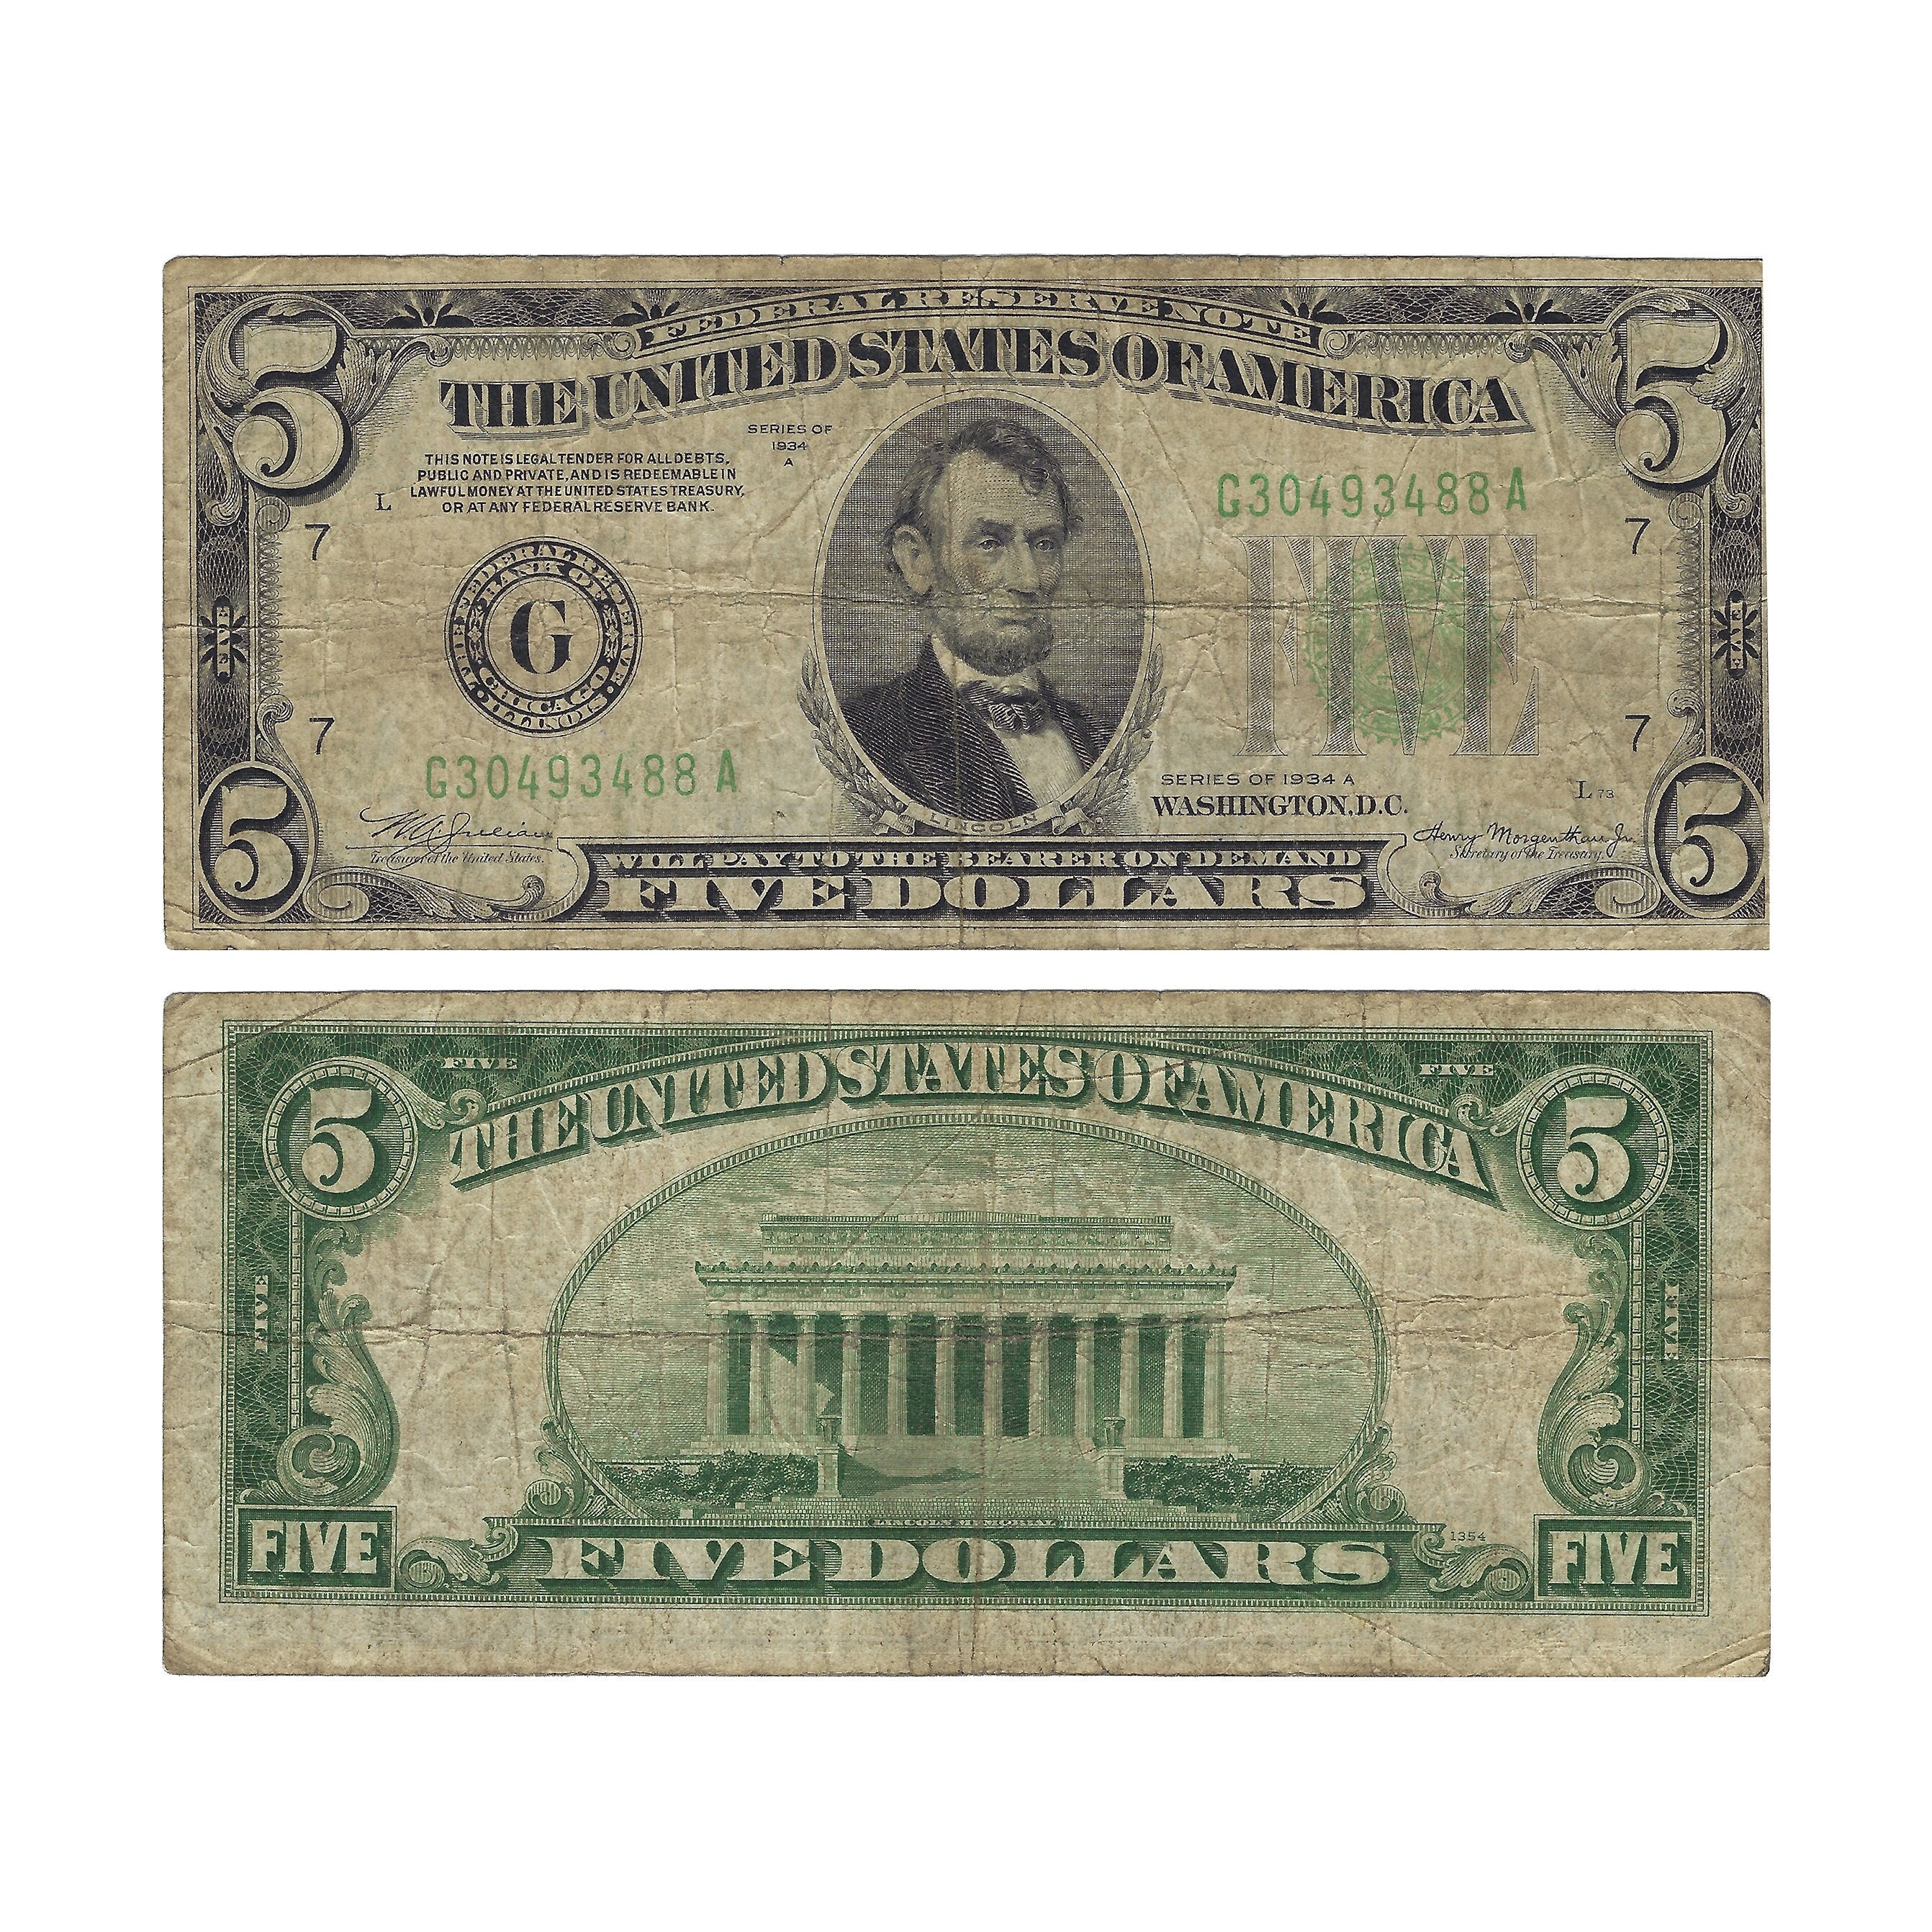 1 dolar, 1934, niebieska pieczęć, seria D15077406 A, podpisy